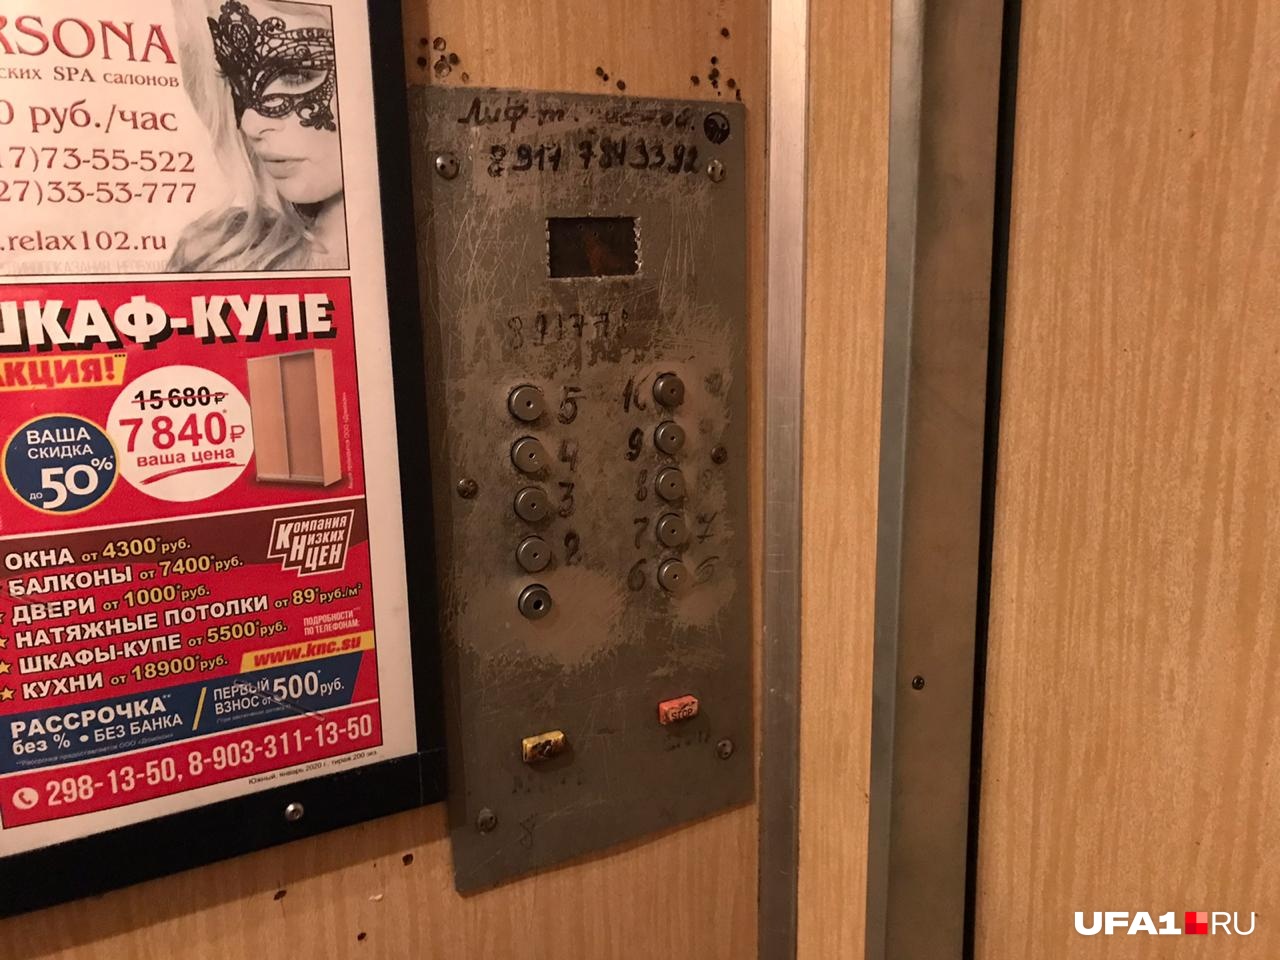 Компания молодых людей пыталась скрыться от разъяренного мужчины в лифте